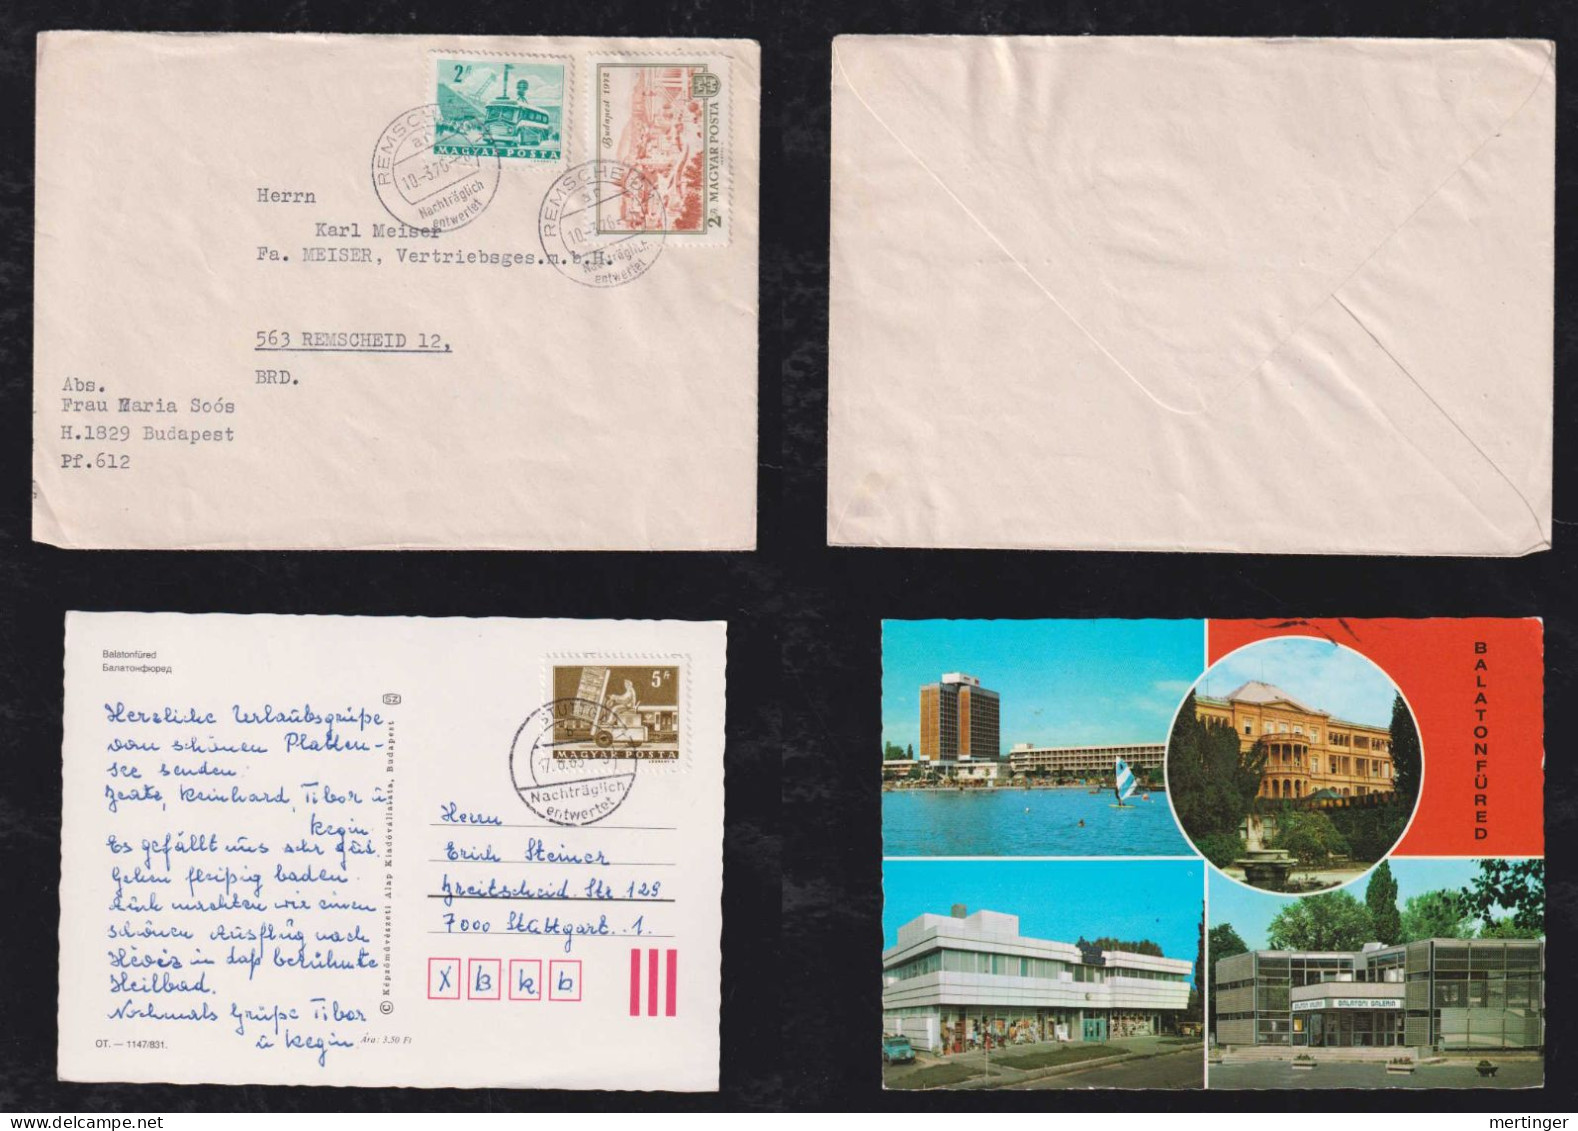 Ungarn Hungary 1976 + 1983 Cover + Postcard Nachträglich Entwertet Stuttgart + Remscheid - Lettres & Documents